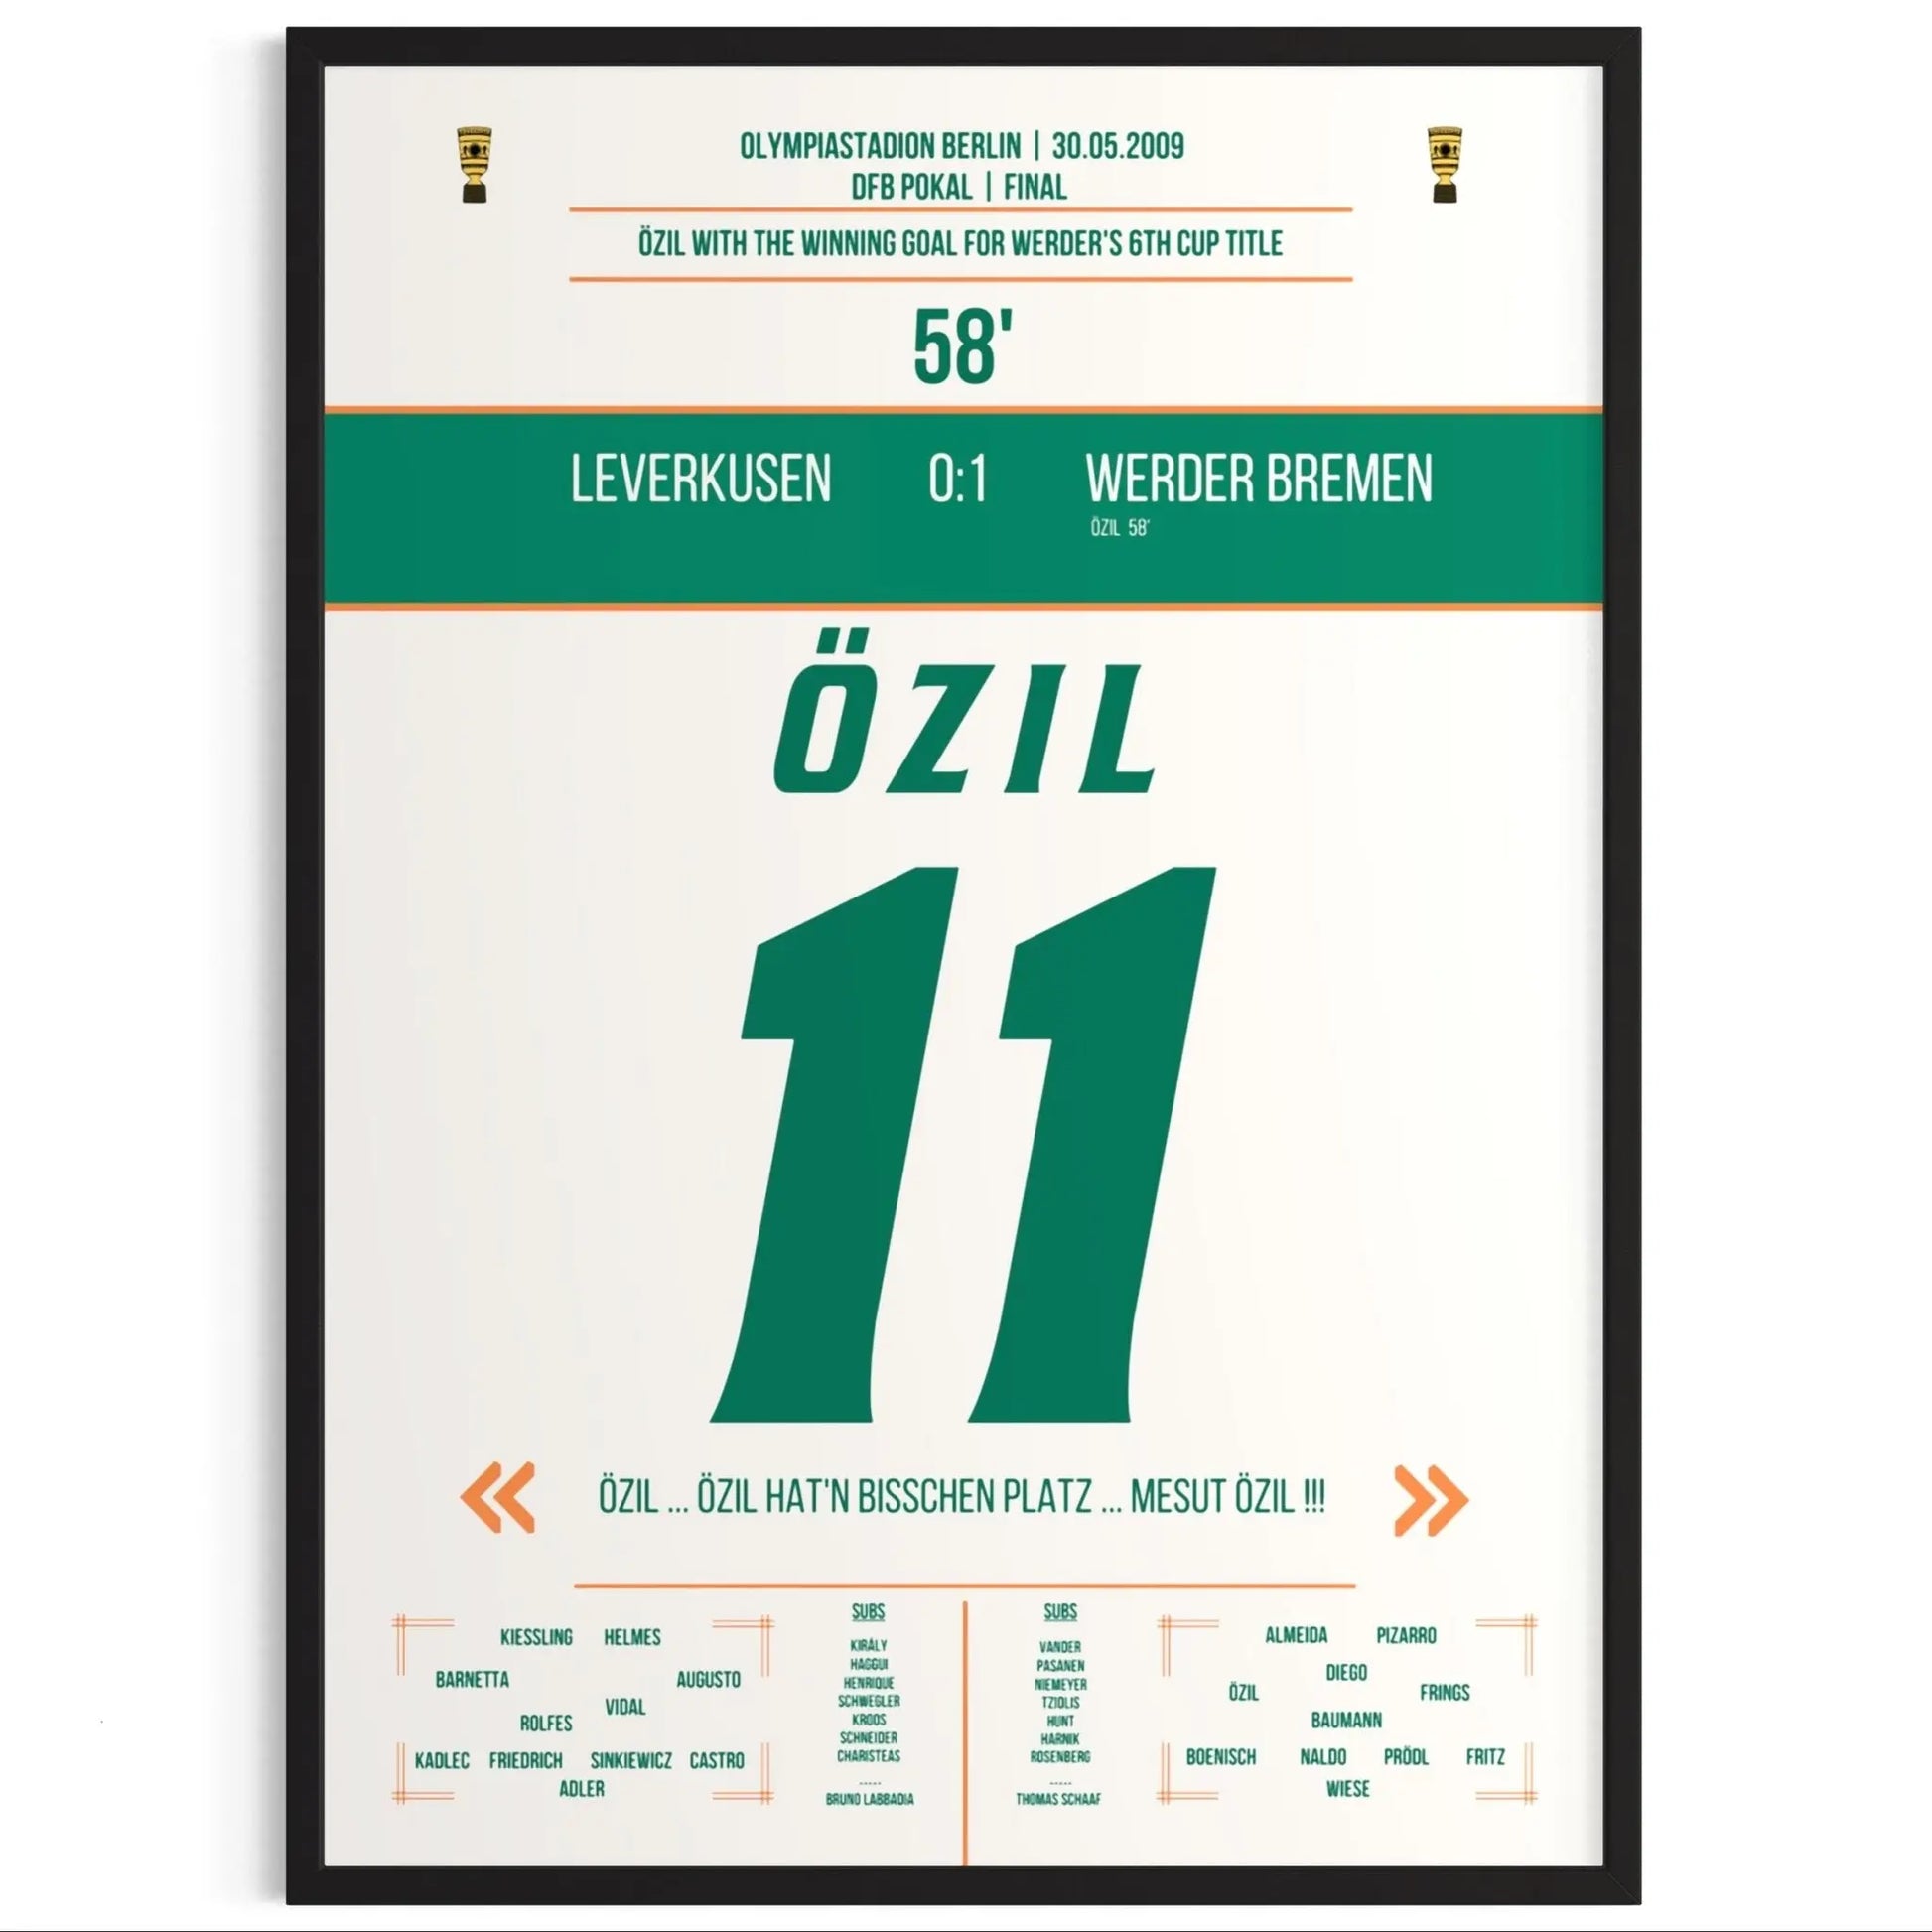 Özil's Siegtreffer bei Bremen's DFB Pokalsieg 2009 